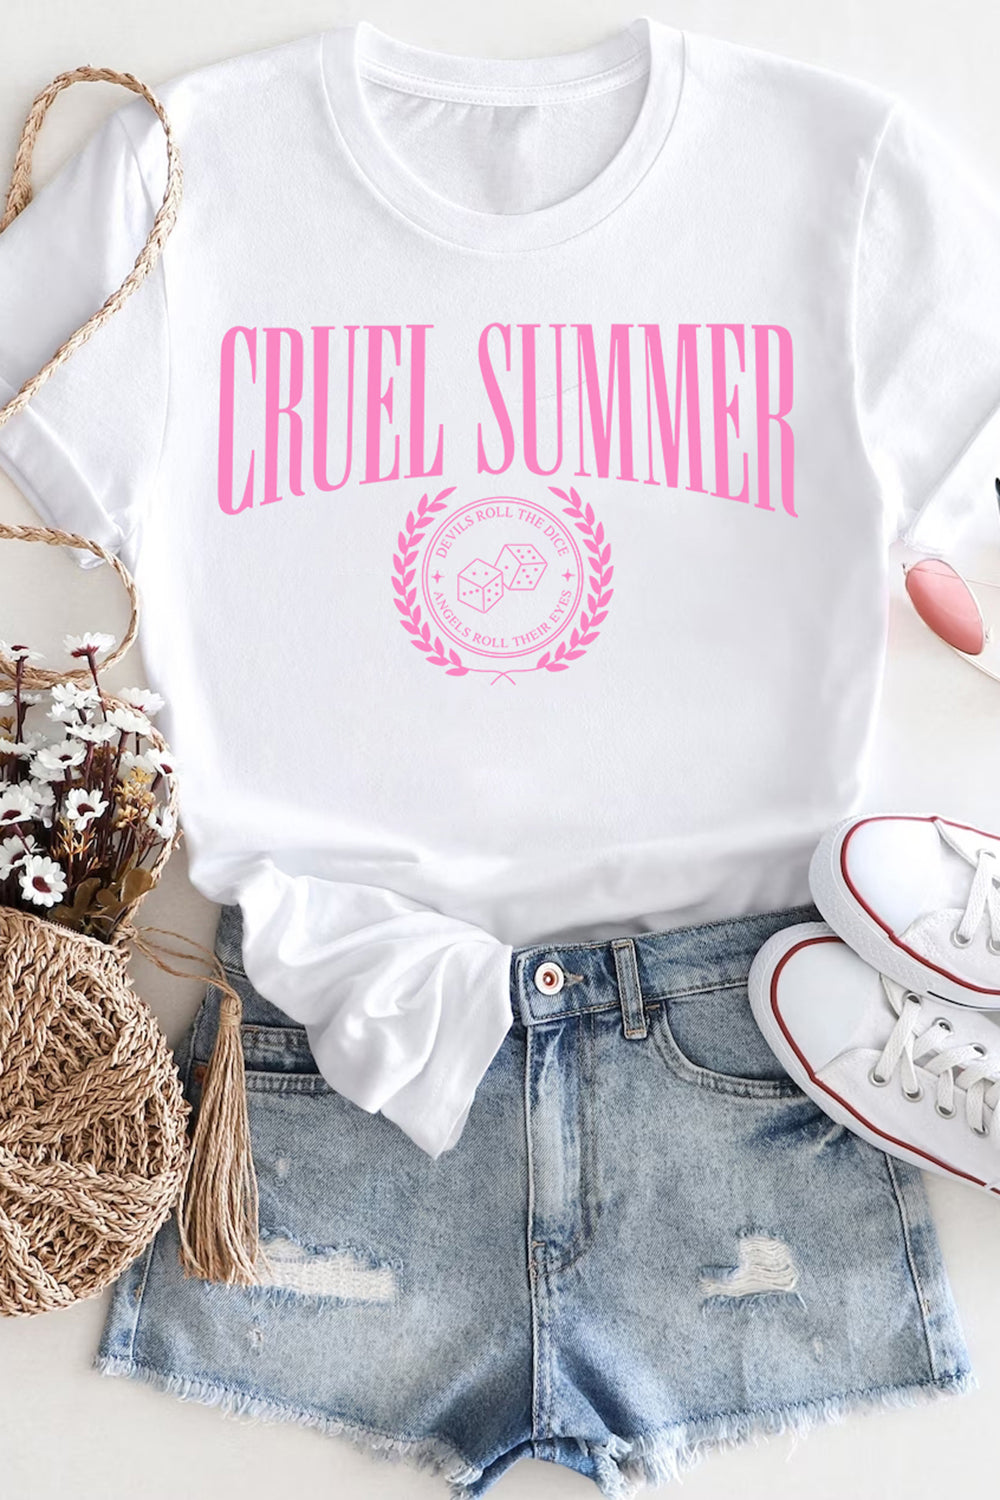 Cruel Summer T-shirt For Women